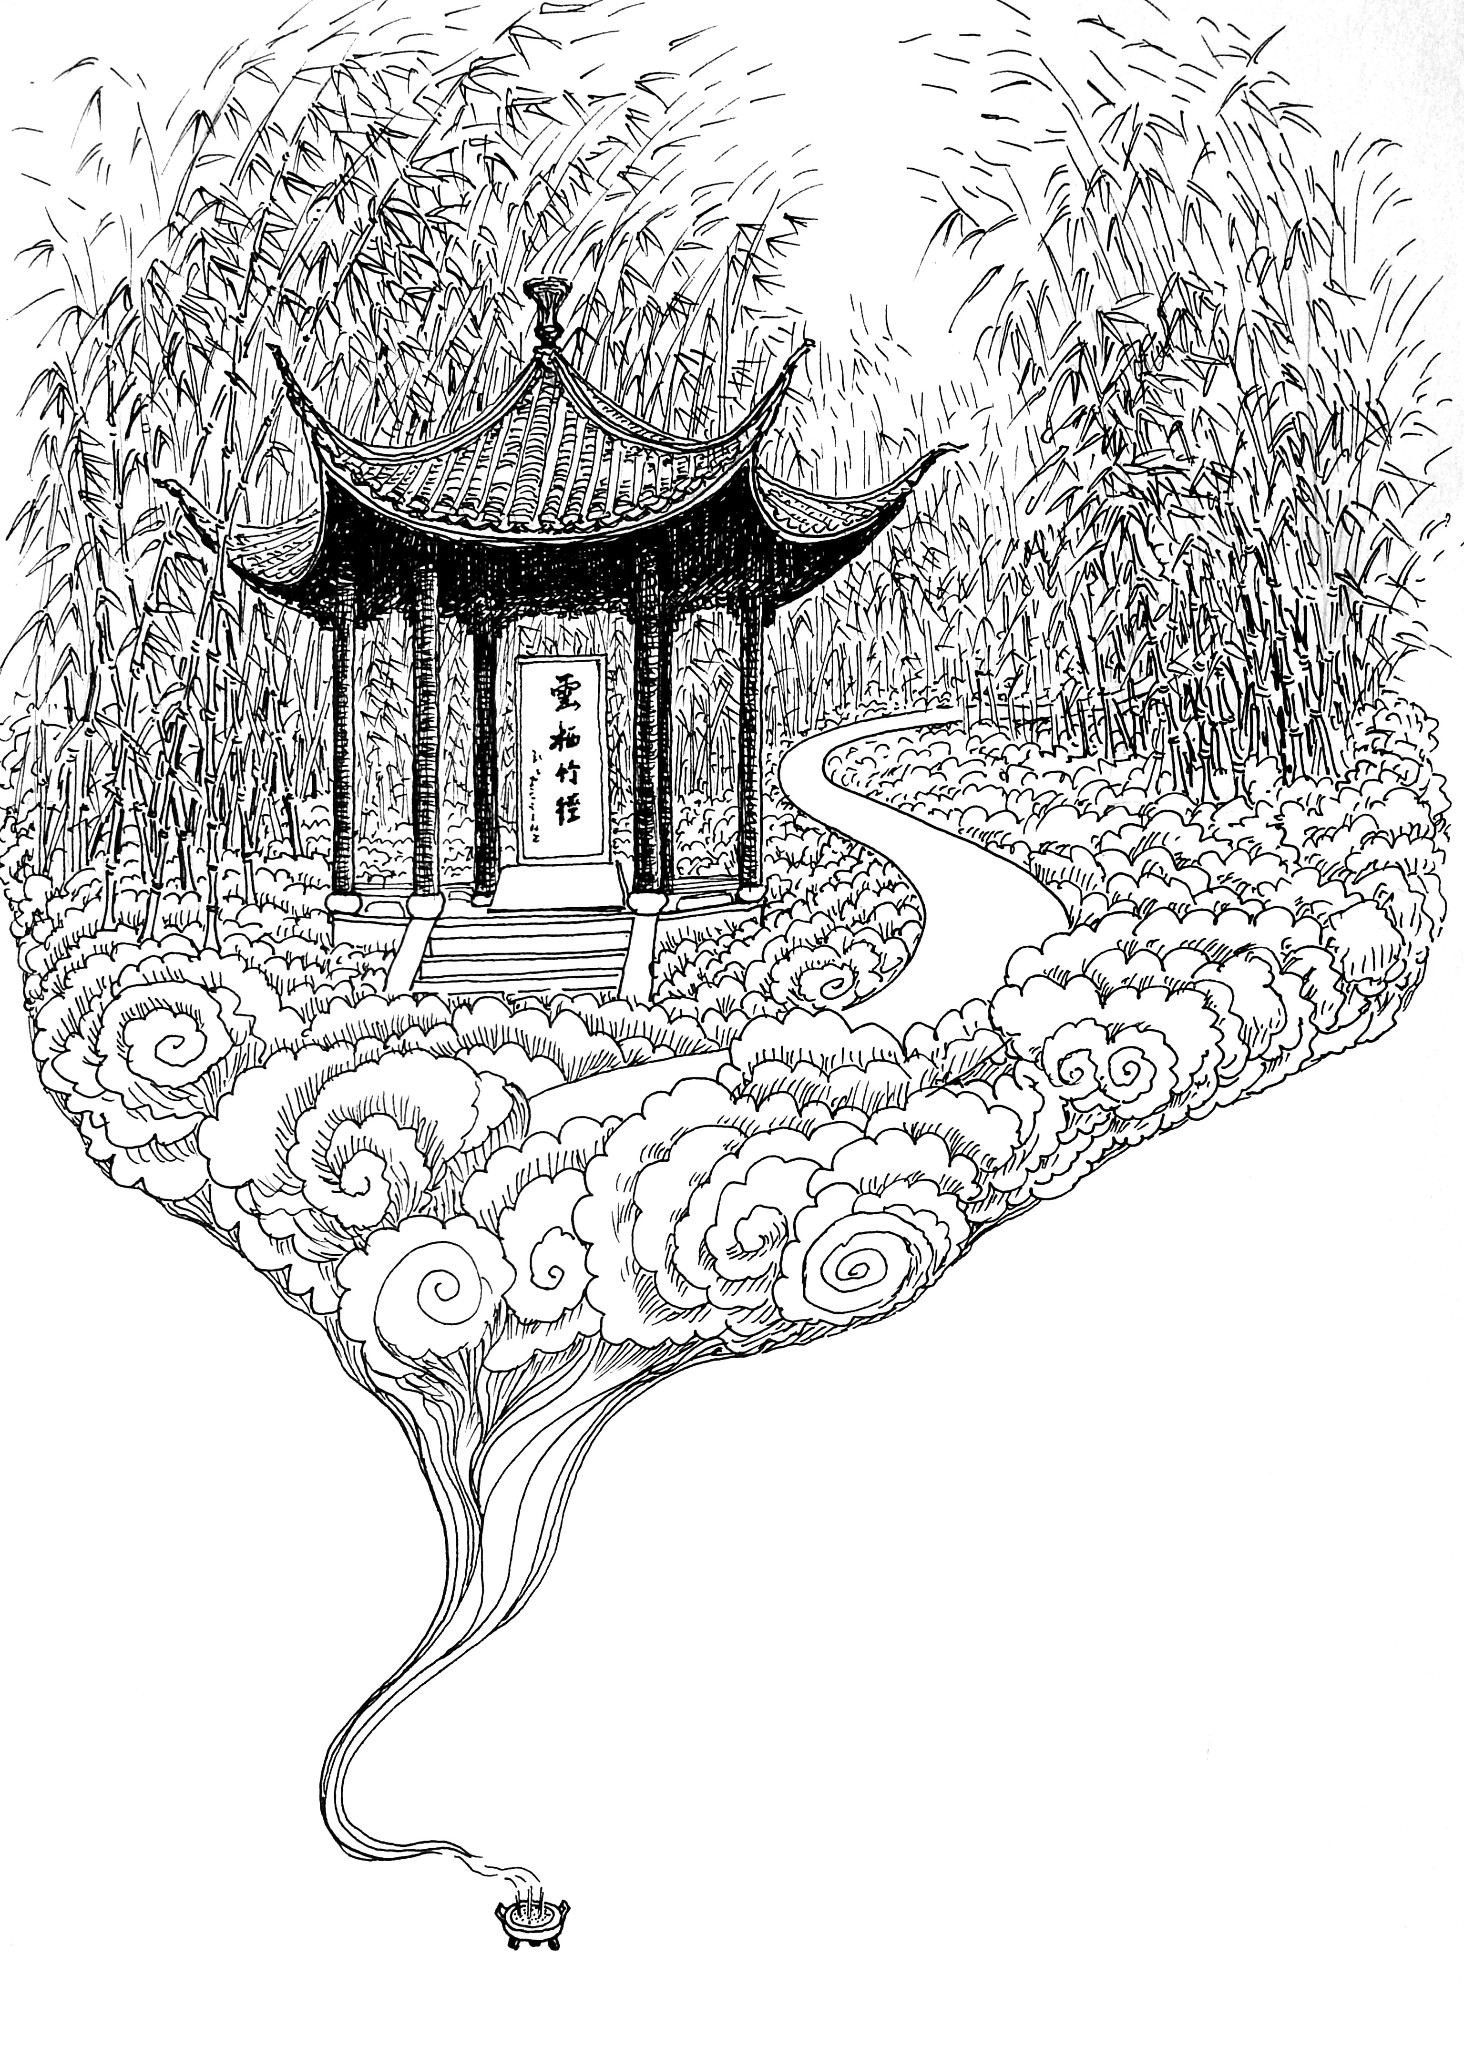 杭州九溪烟树,云溪竹径,灵隐寺可以安排在同一天吗?具体怎么走